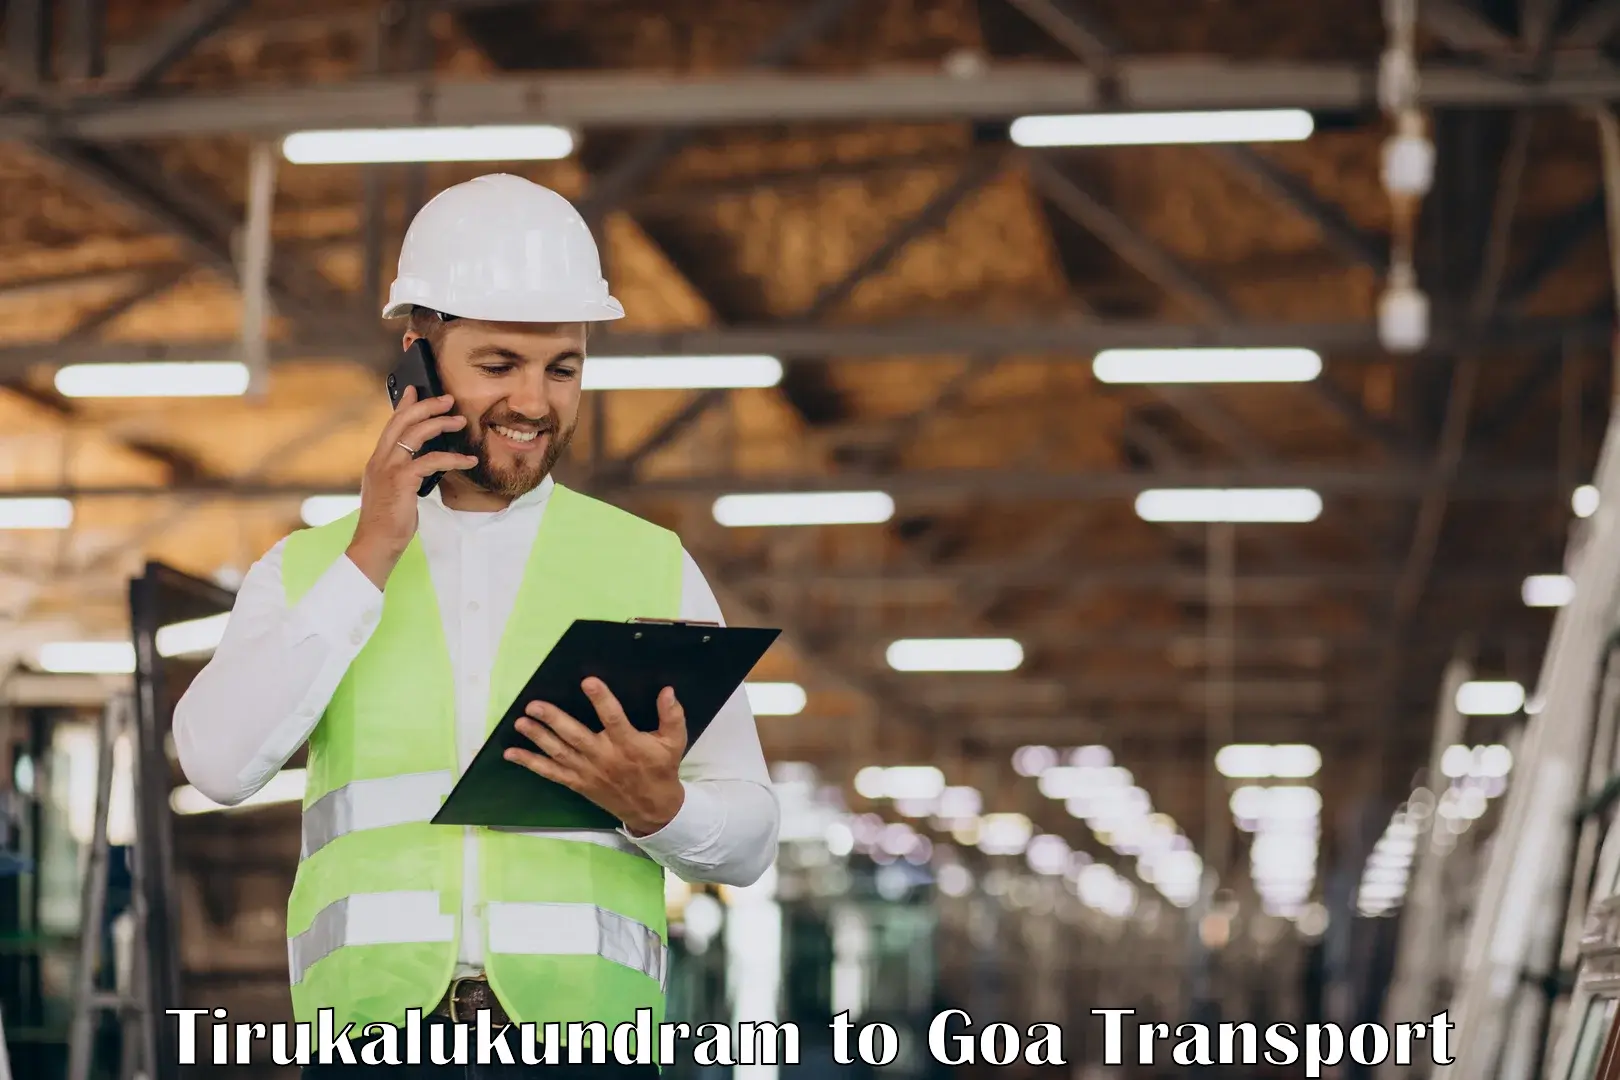 Truck transport companies in India Tirukalukundram to Panaji